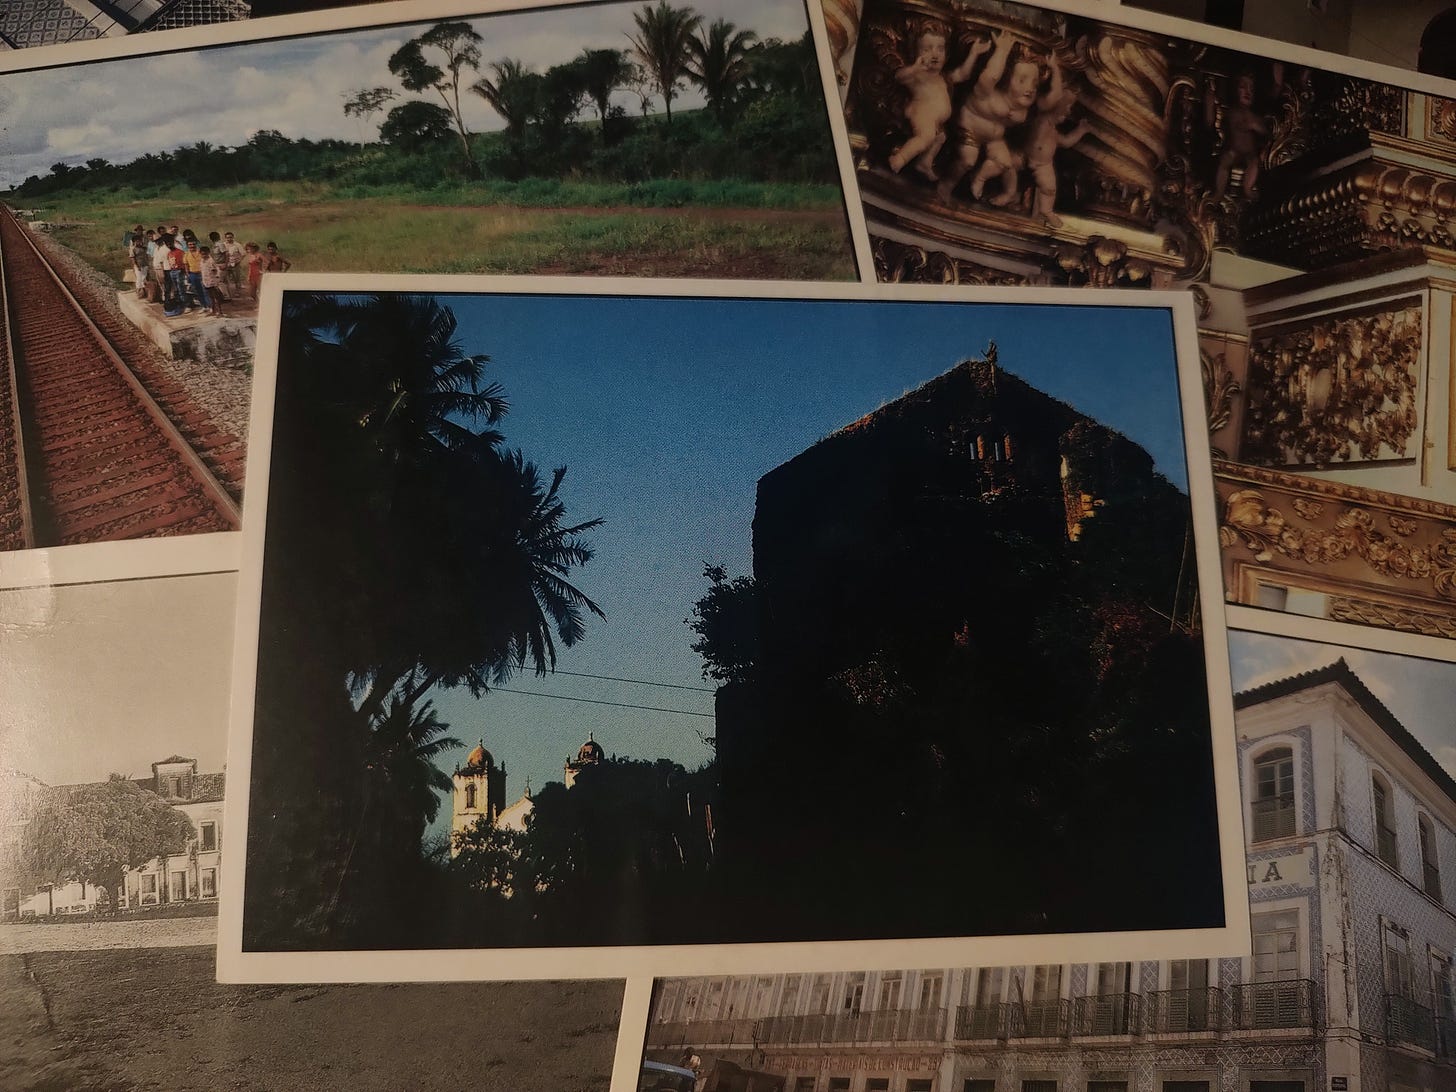 cartão postal com foto colorida de silhuetas de ávores e de ruínas de palacetes. ao fundo, duas torres de uma igreja católica.